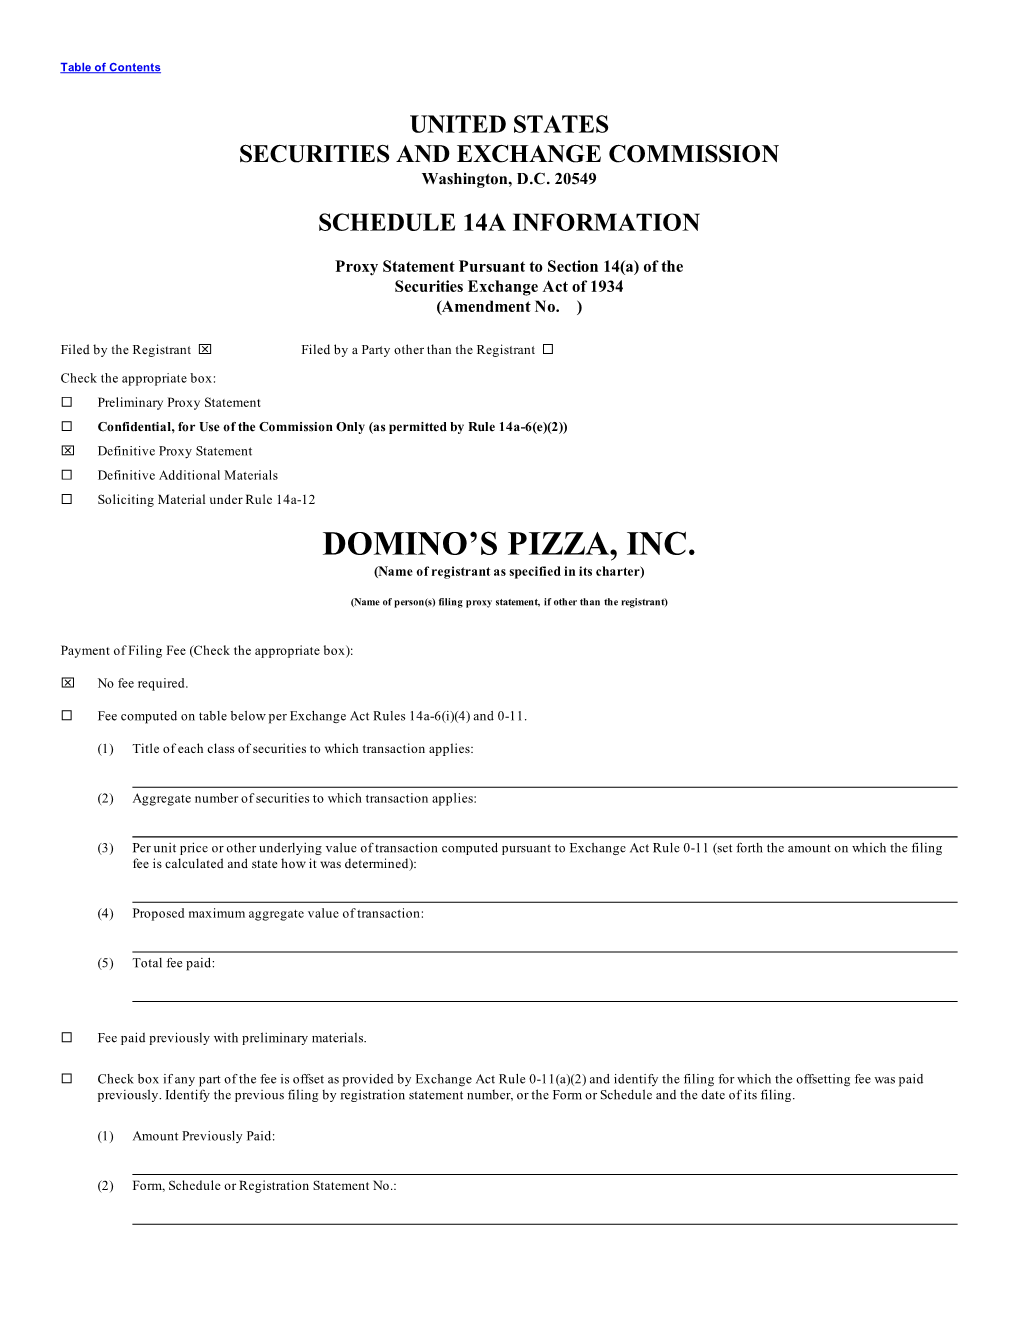 Domino's Pizza, Inc